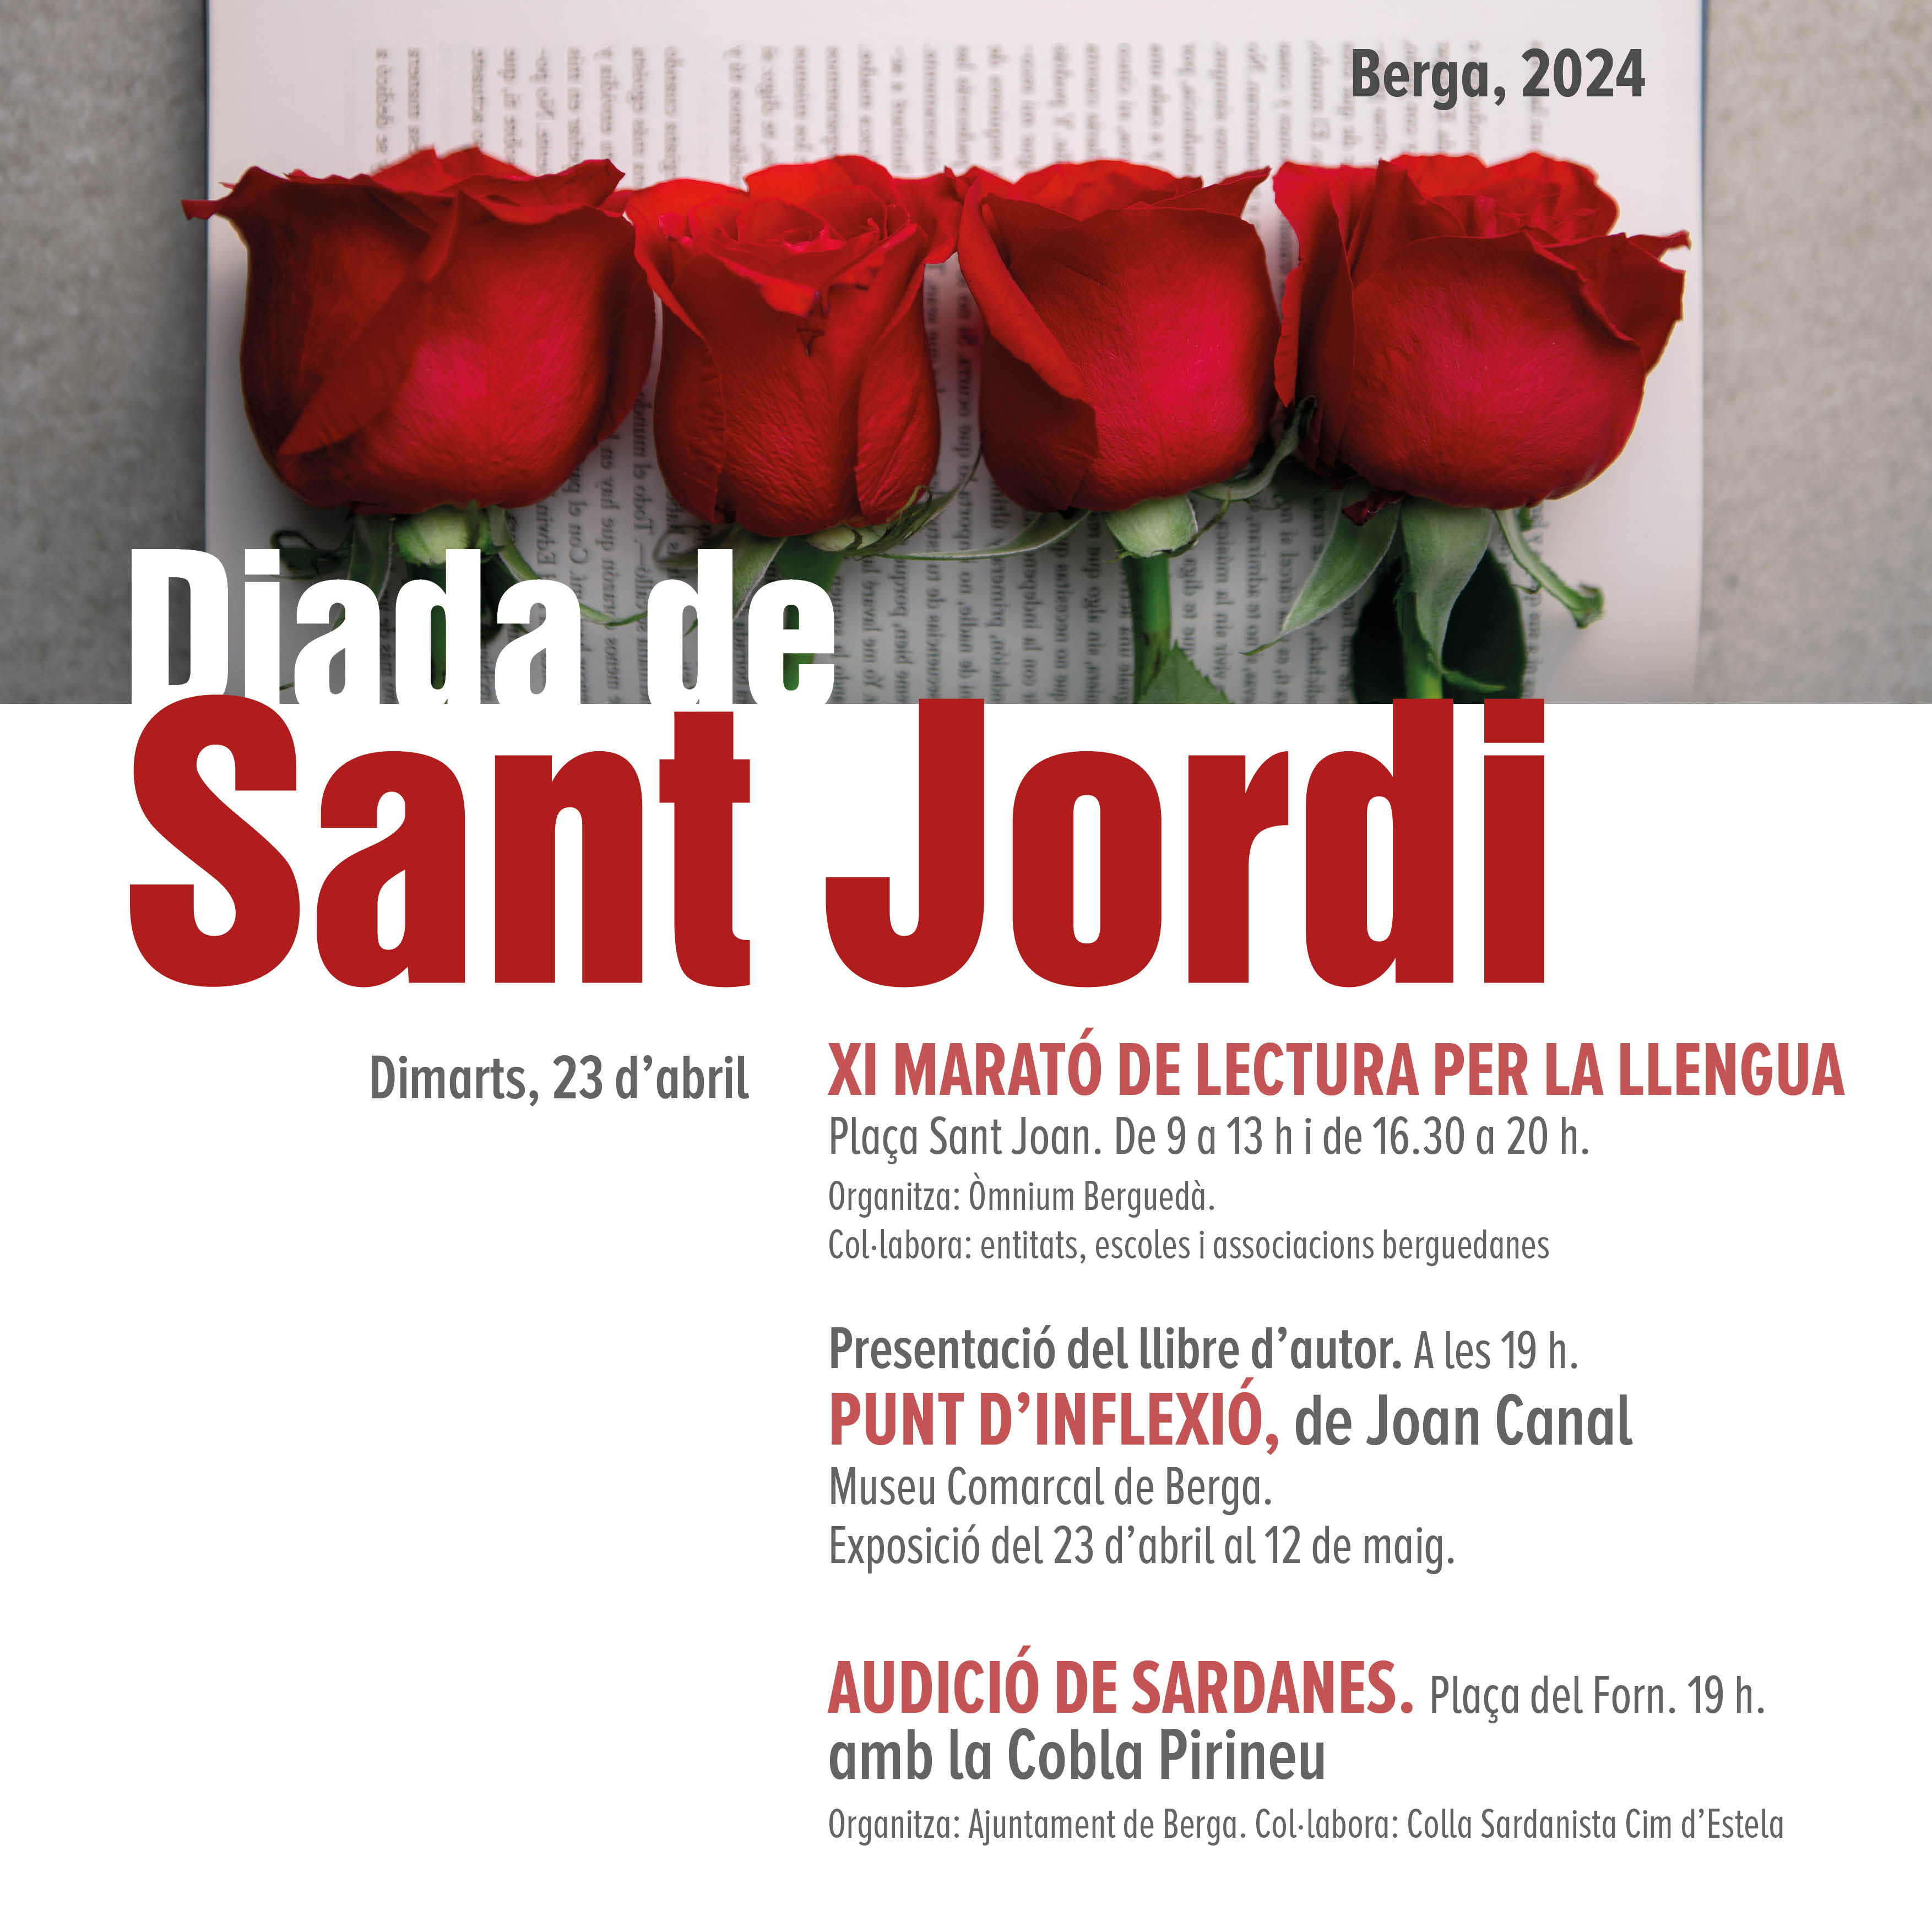 Diada de Sant Jordi 2024 